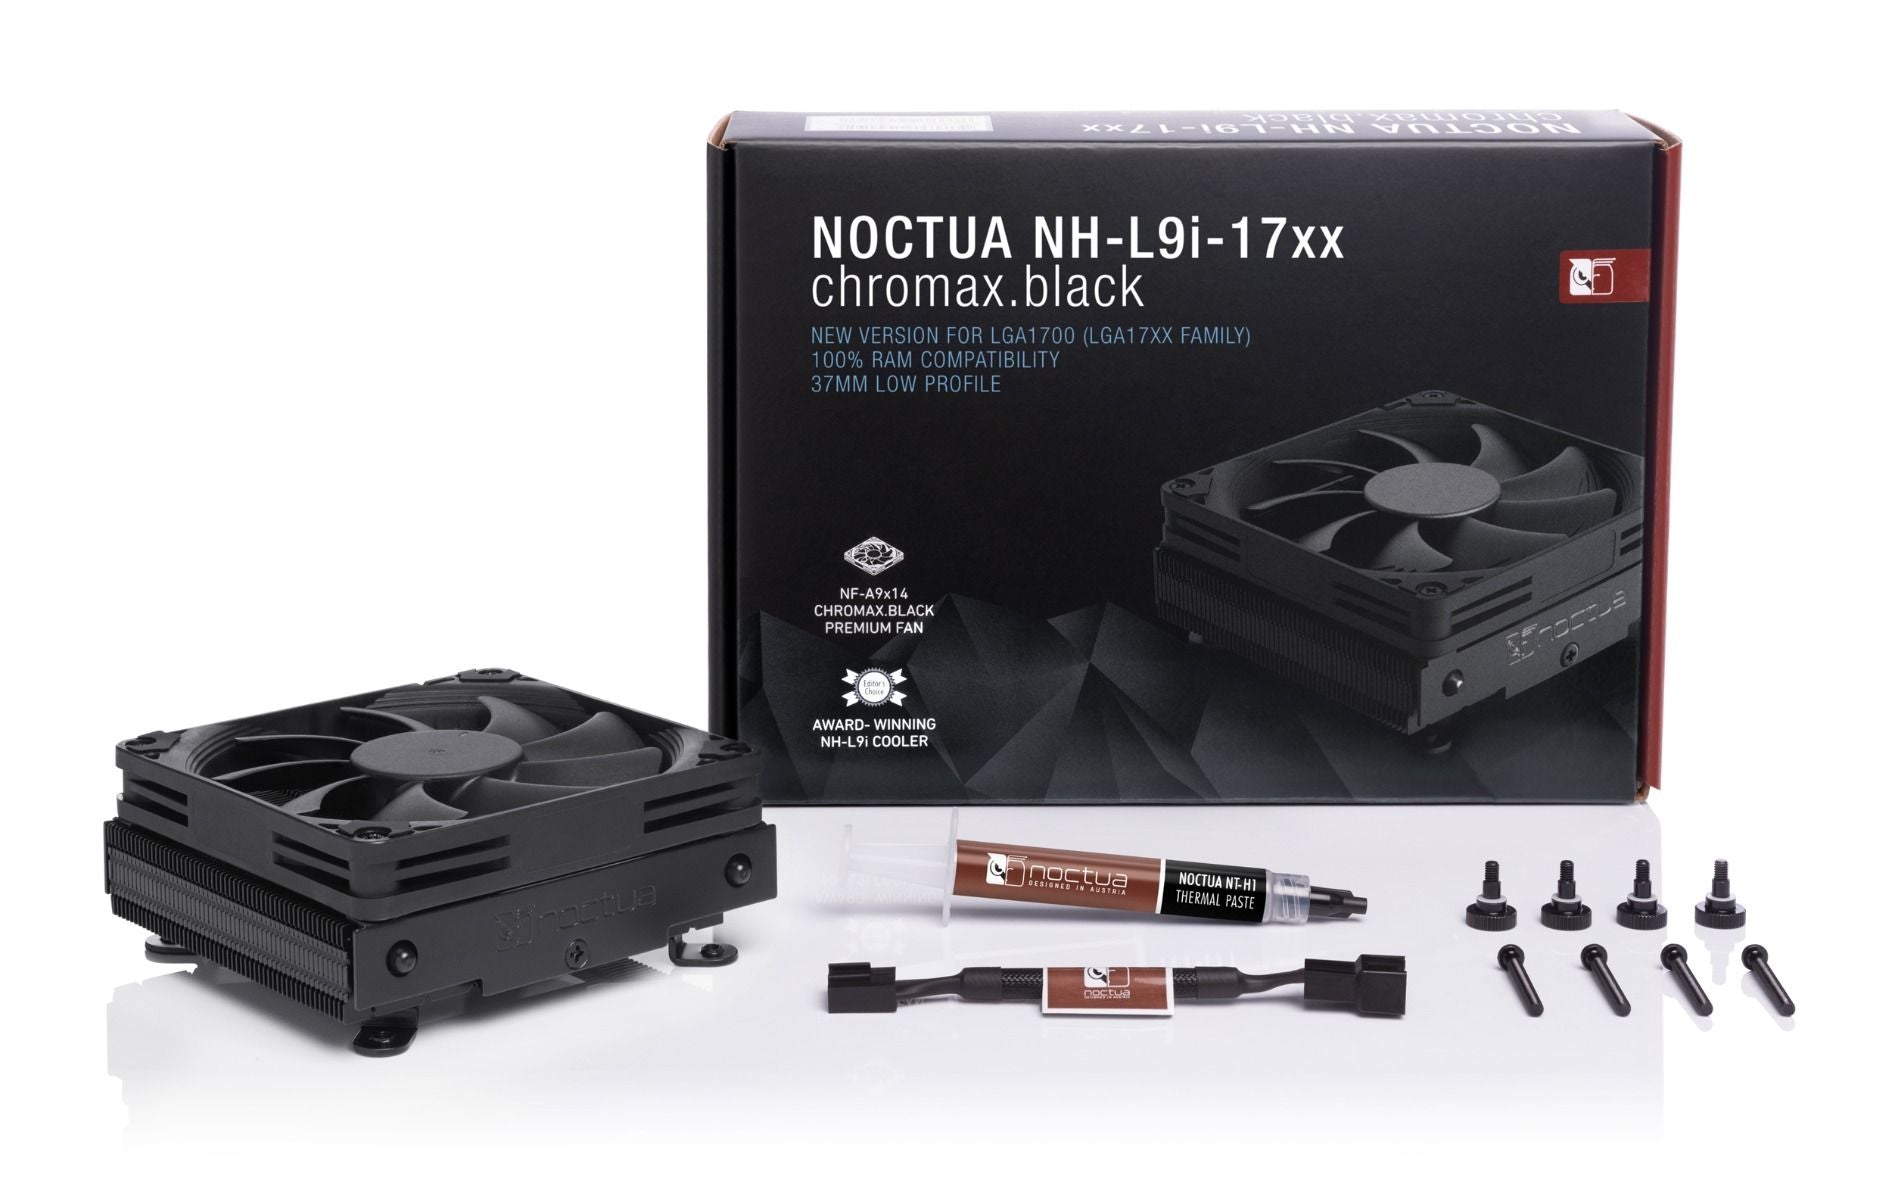 NOCTUA NH-L9I-17XX CHROMAX.BLACK CPU COOLER